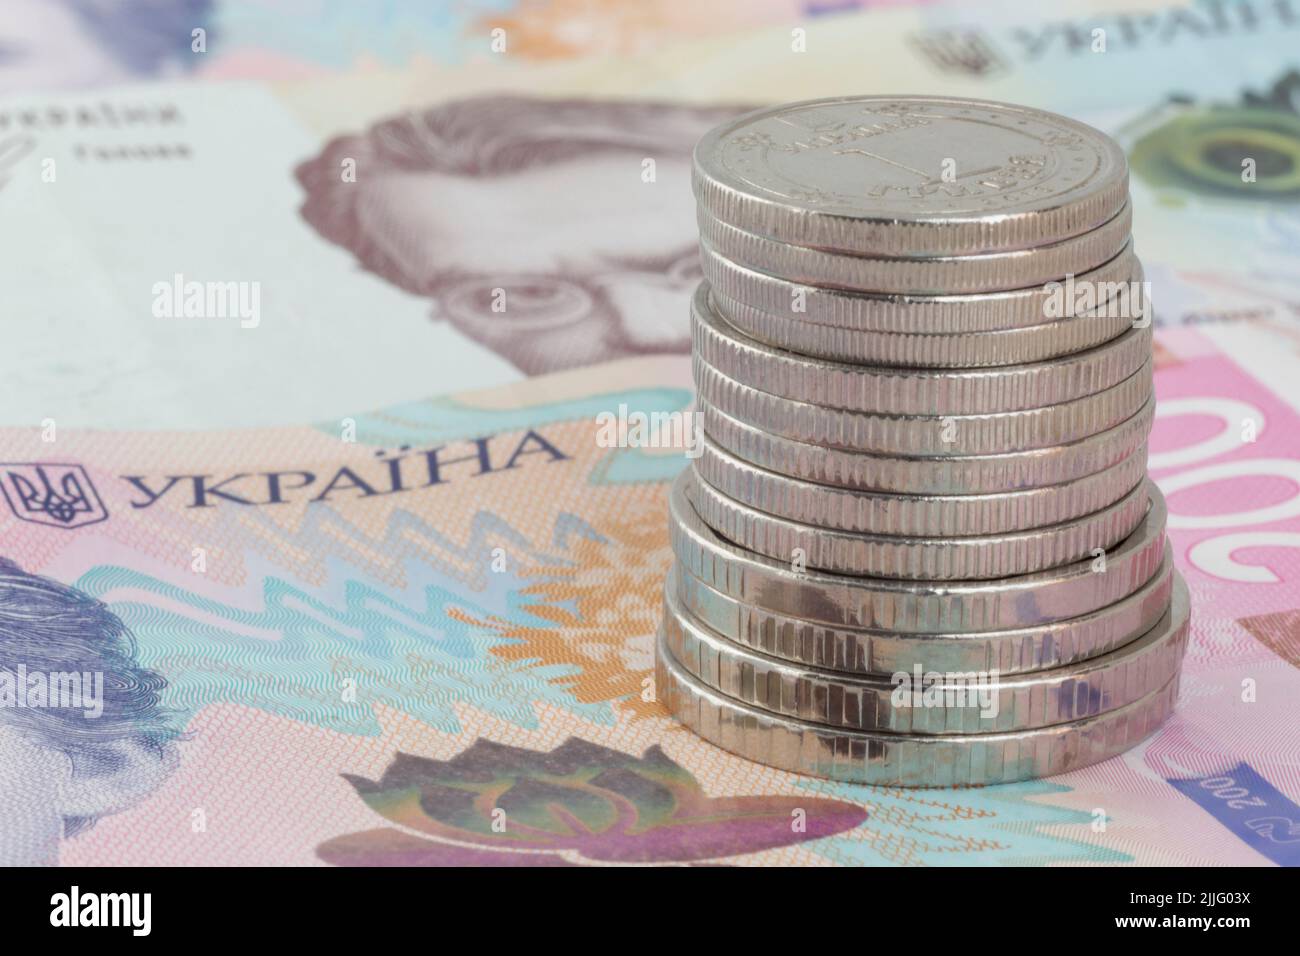 Pila de monedas ucranianas de hrivnya sobre doscientos billetes ucranianos de hrivnya Foto de stock